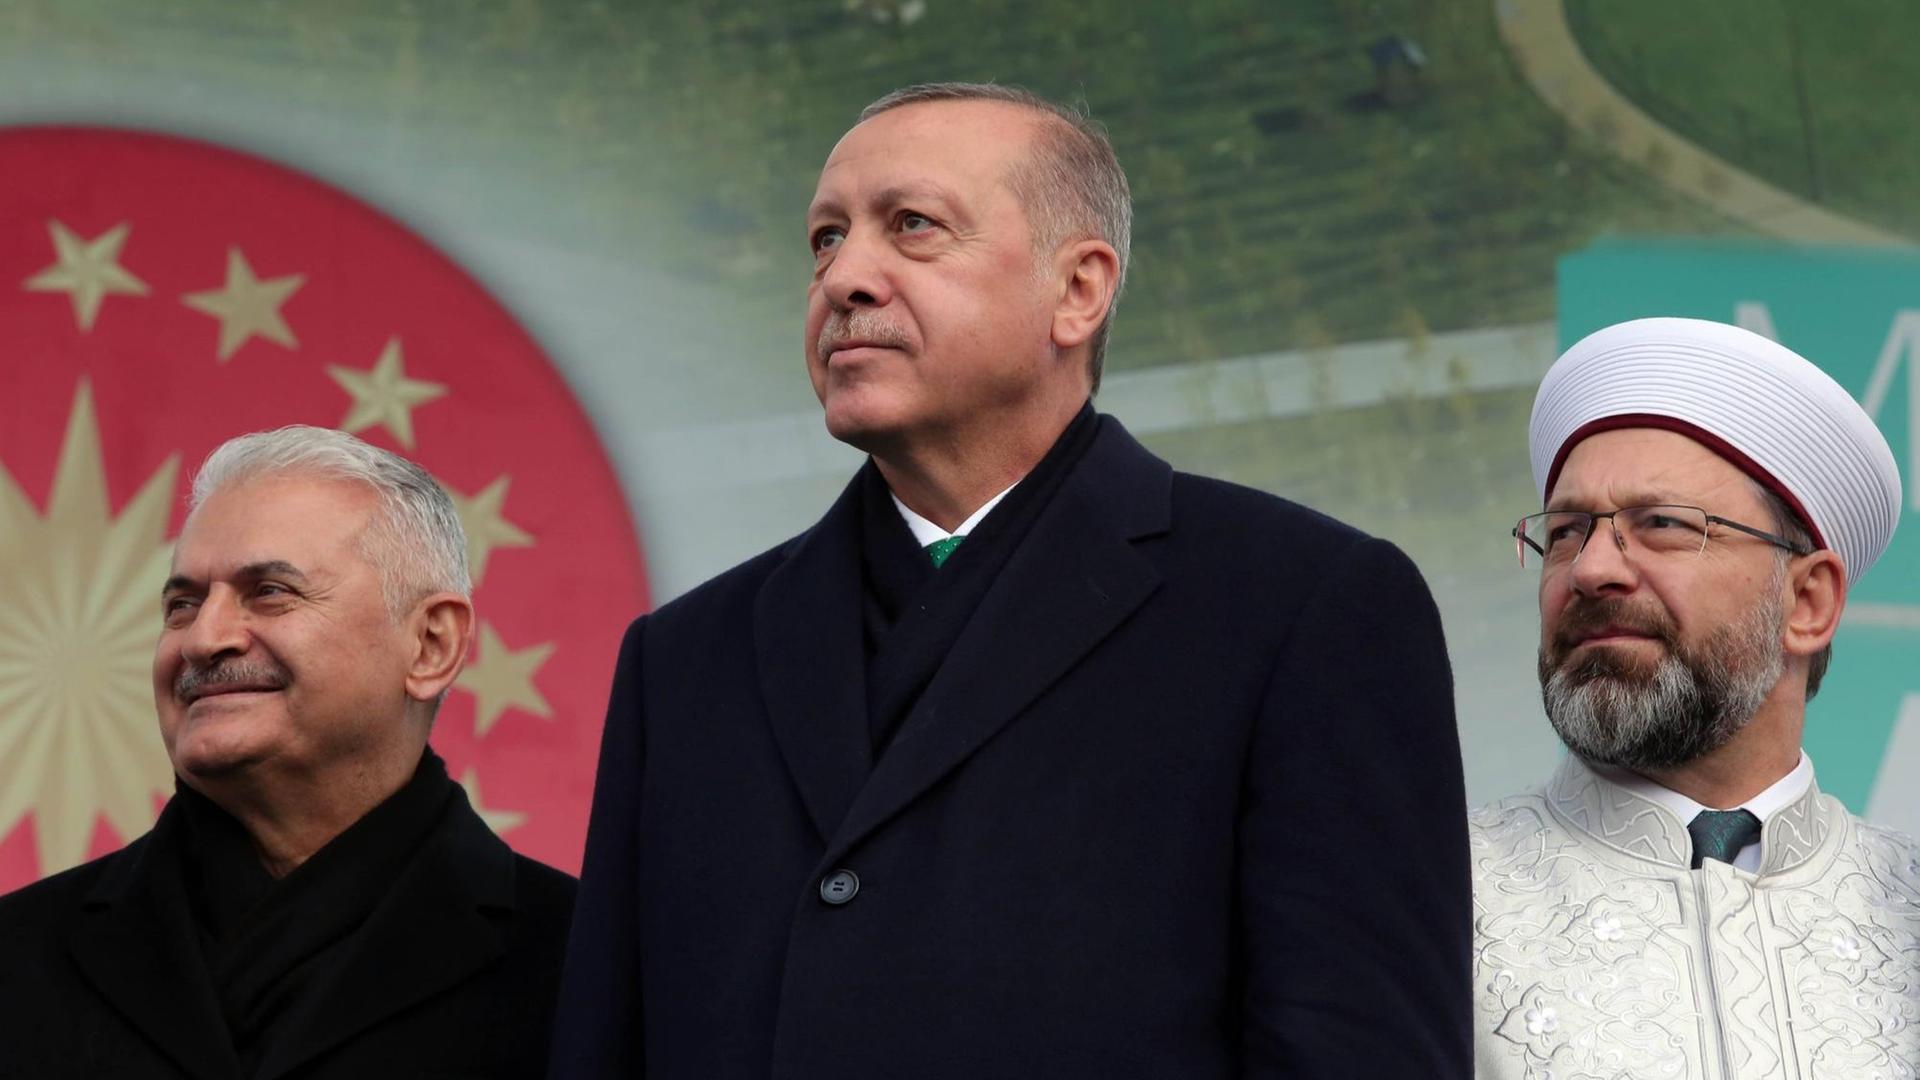 Präsident Erdogan bei einer Eröffnungsrede für einen öffentlichen Garten in Istanbul. Hinter ihm stehen Parlamentssprecher Binali Yildirim (l.) und das Oberhaupt der türkischen Religionsbehörde Diyanet, Ali Erbas (r.) (Foto vom 17.11.2018)